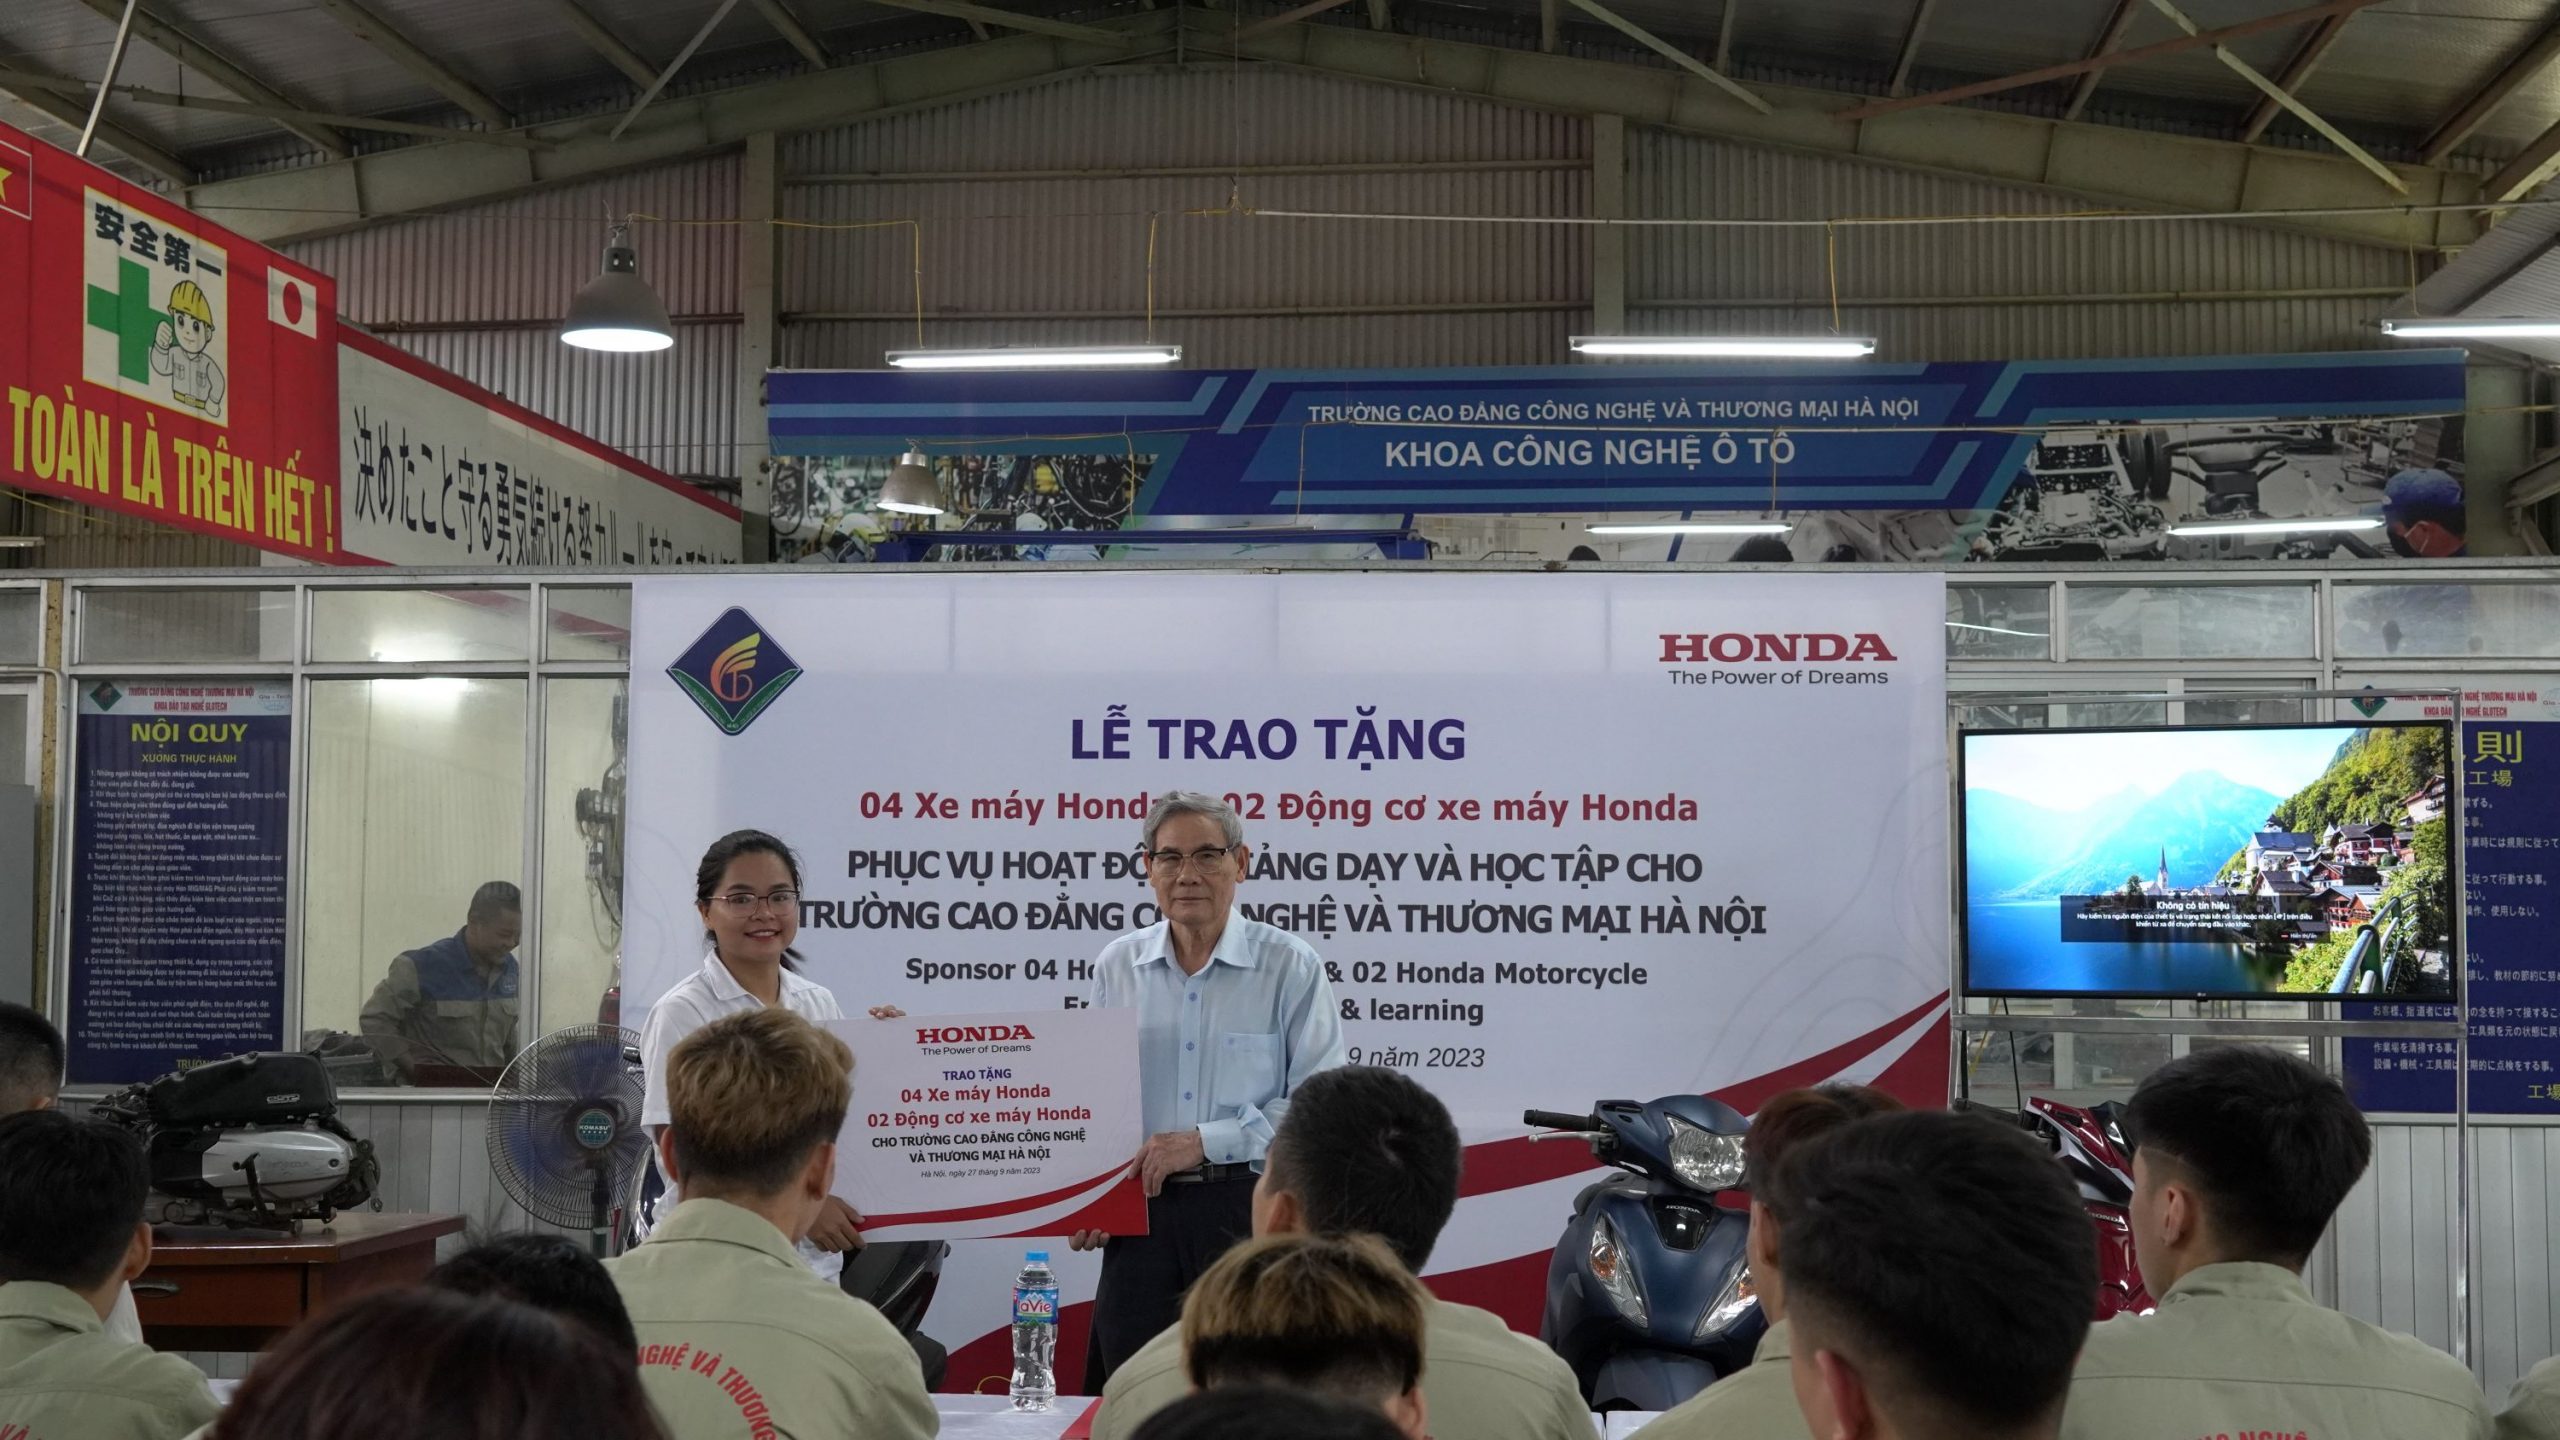 Honda Việt Nam trao tặng 4 xe máy Honda và 2 động cơ xe máy Honda cho Trường Cao đẳng Công nghệ và Thương mại Hà Nội